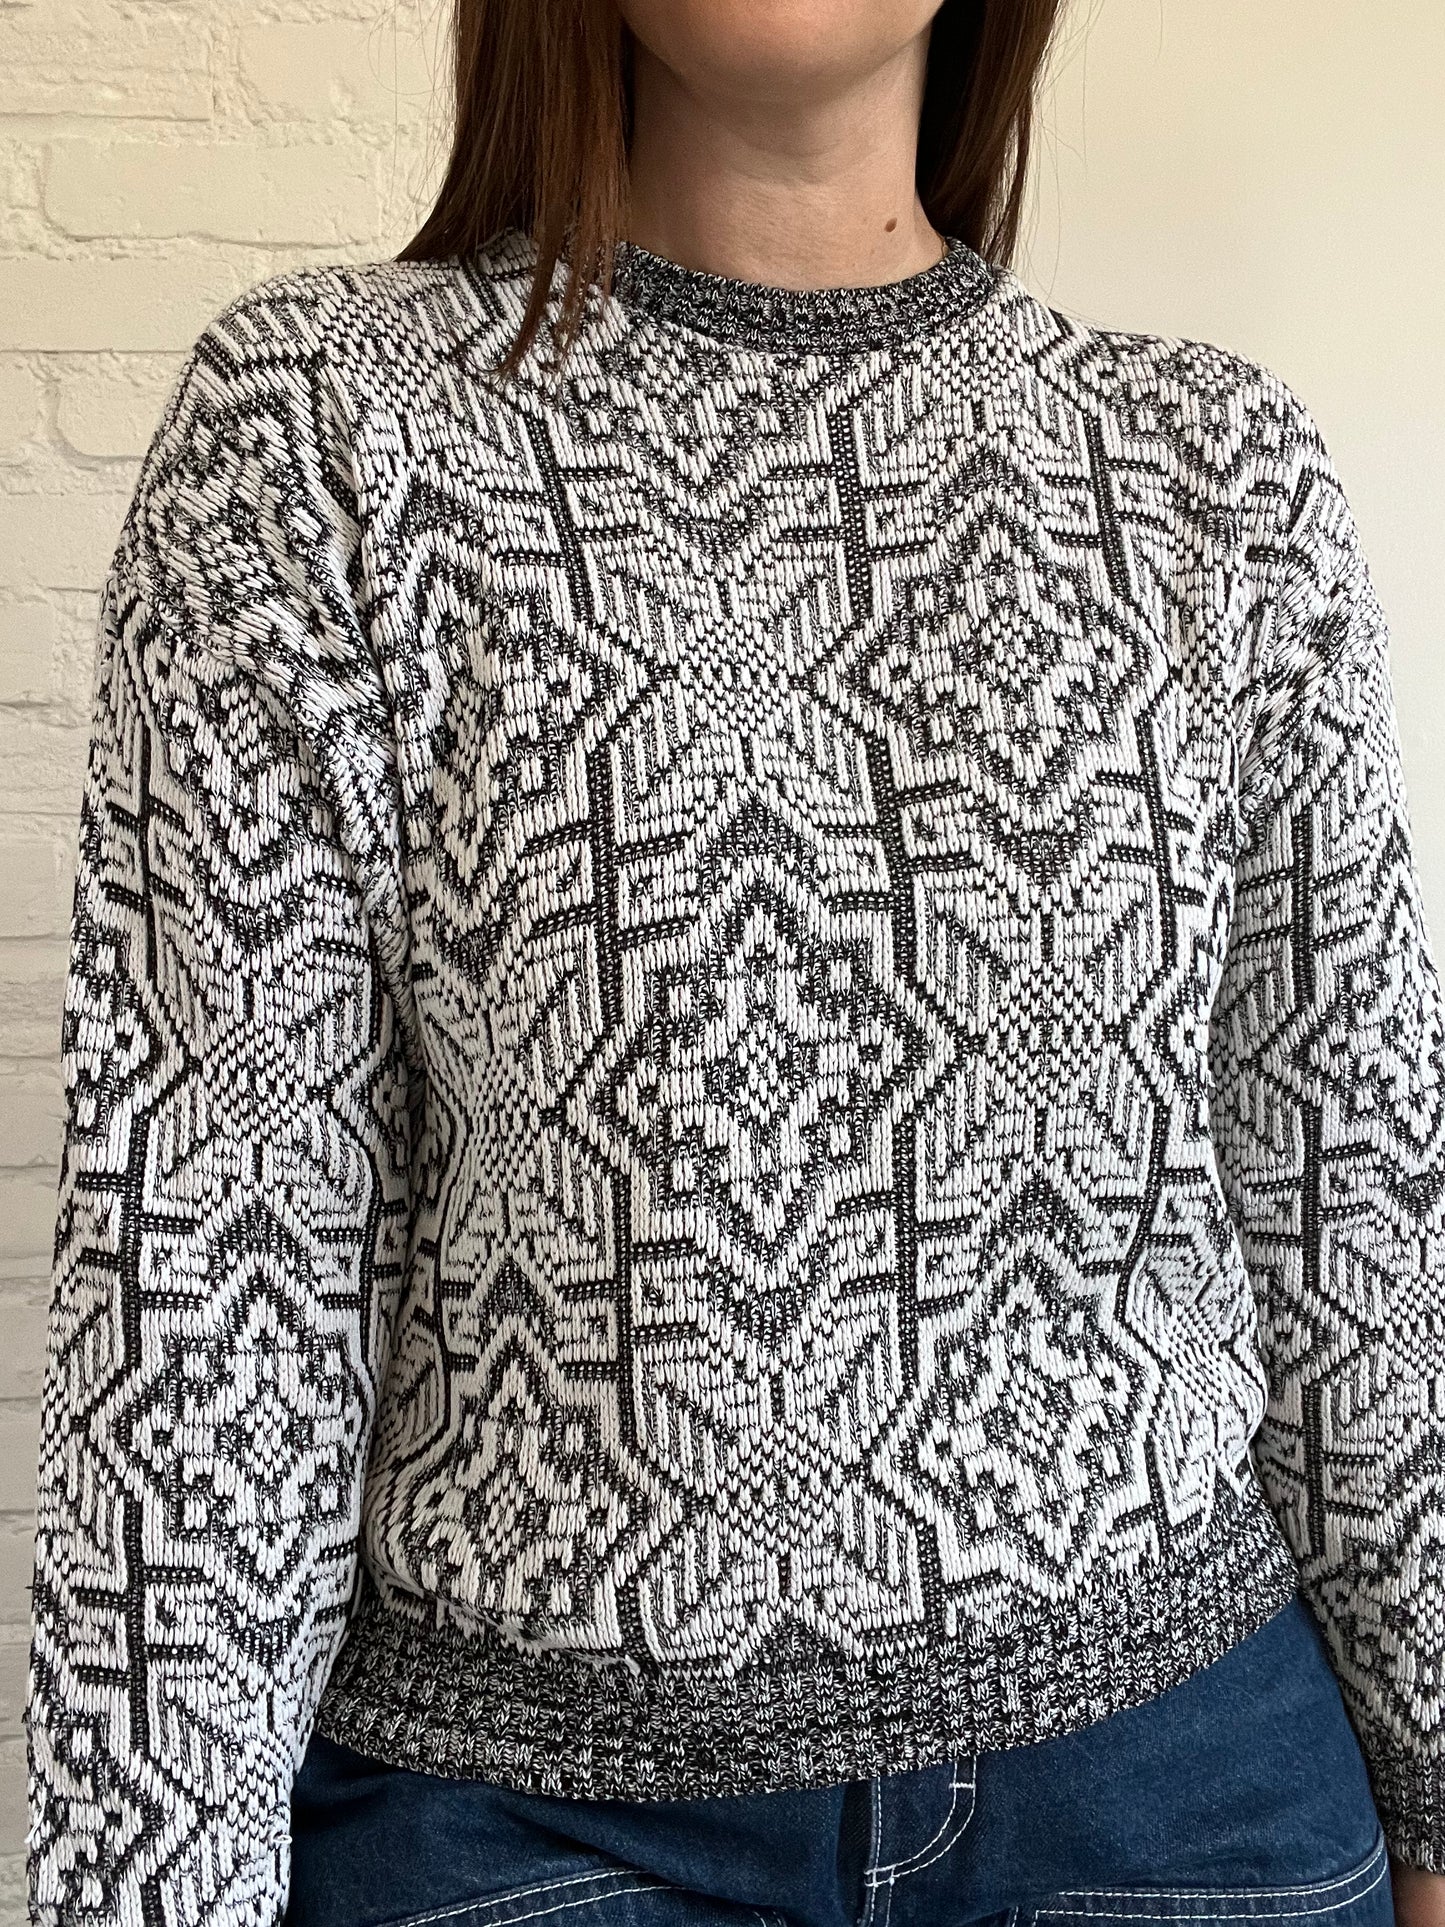 B&W Geometric Knit Sweater - S